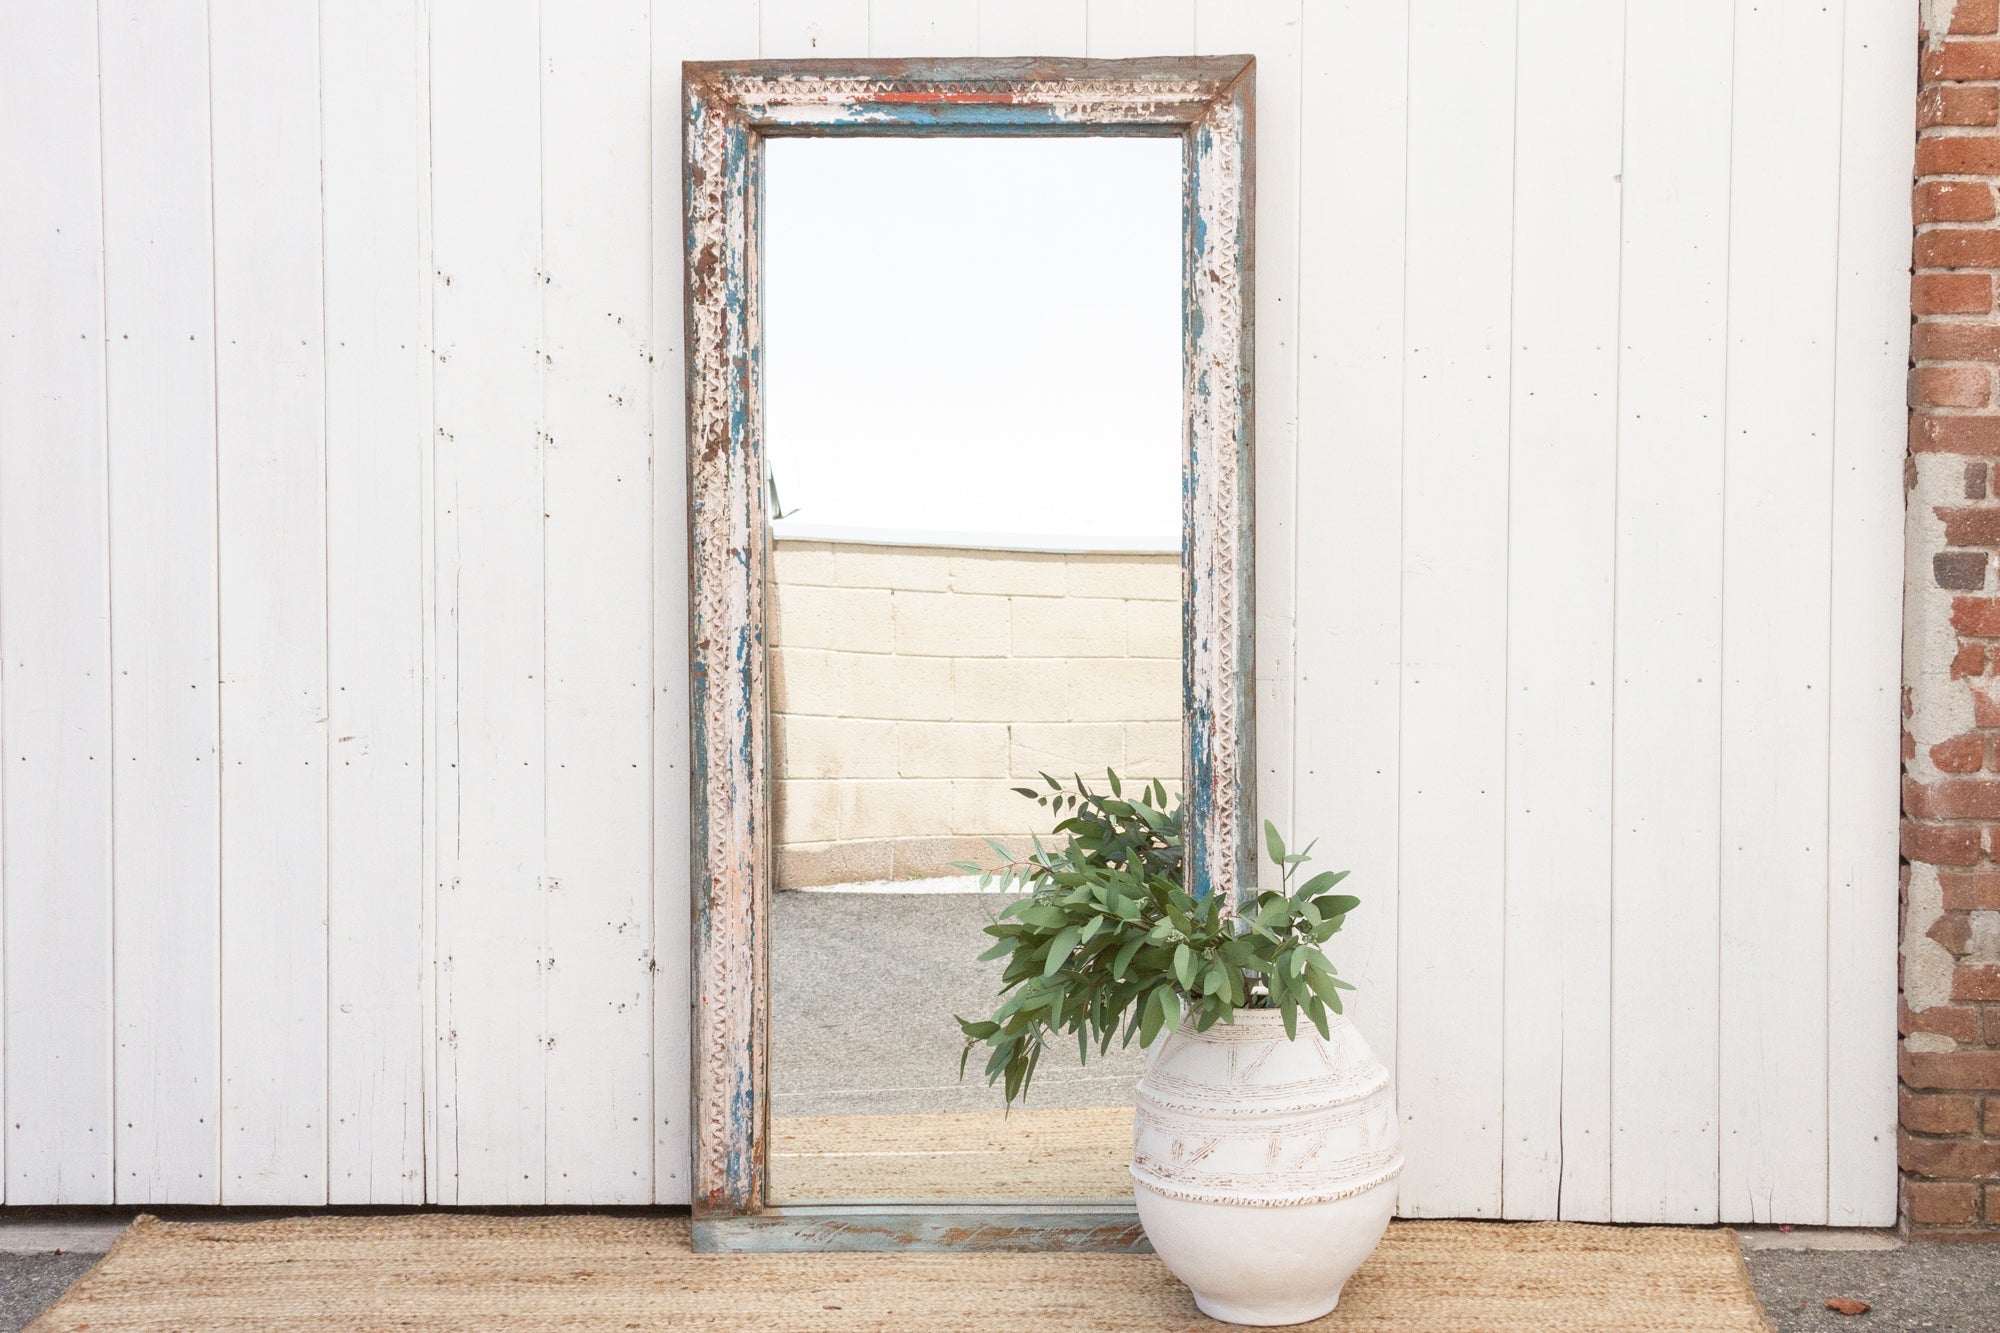 DE-COR | Ispirazione globale, Specchio intagliato con fiori bianchi (commercio)